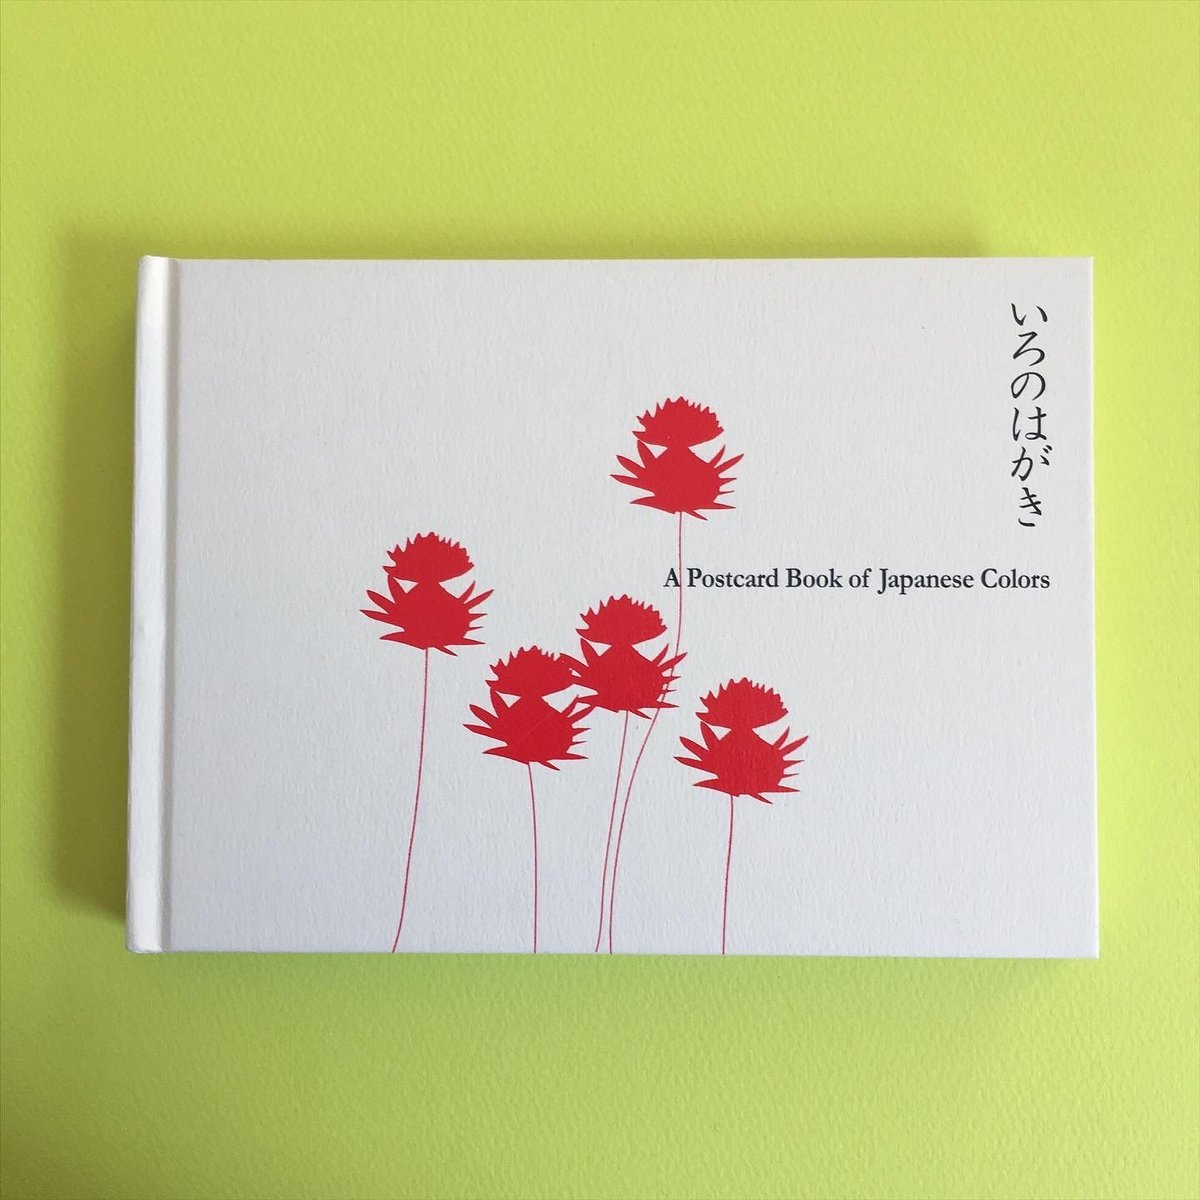 いろのはがき―愛らしい日本のいろのカードブック